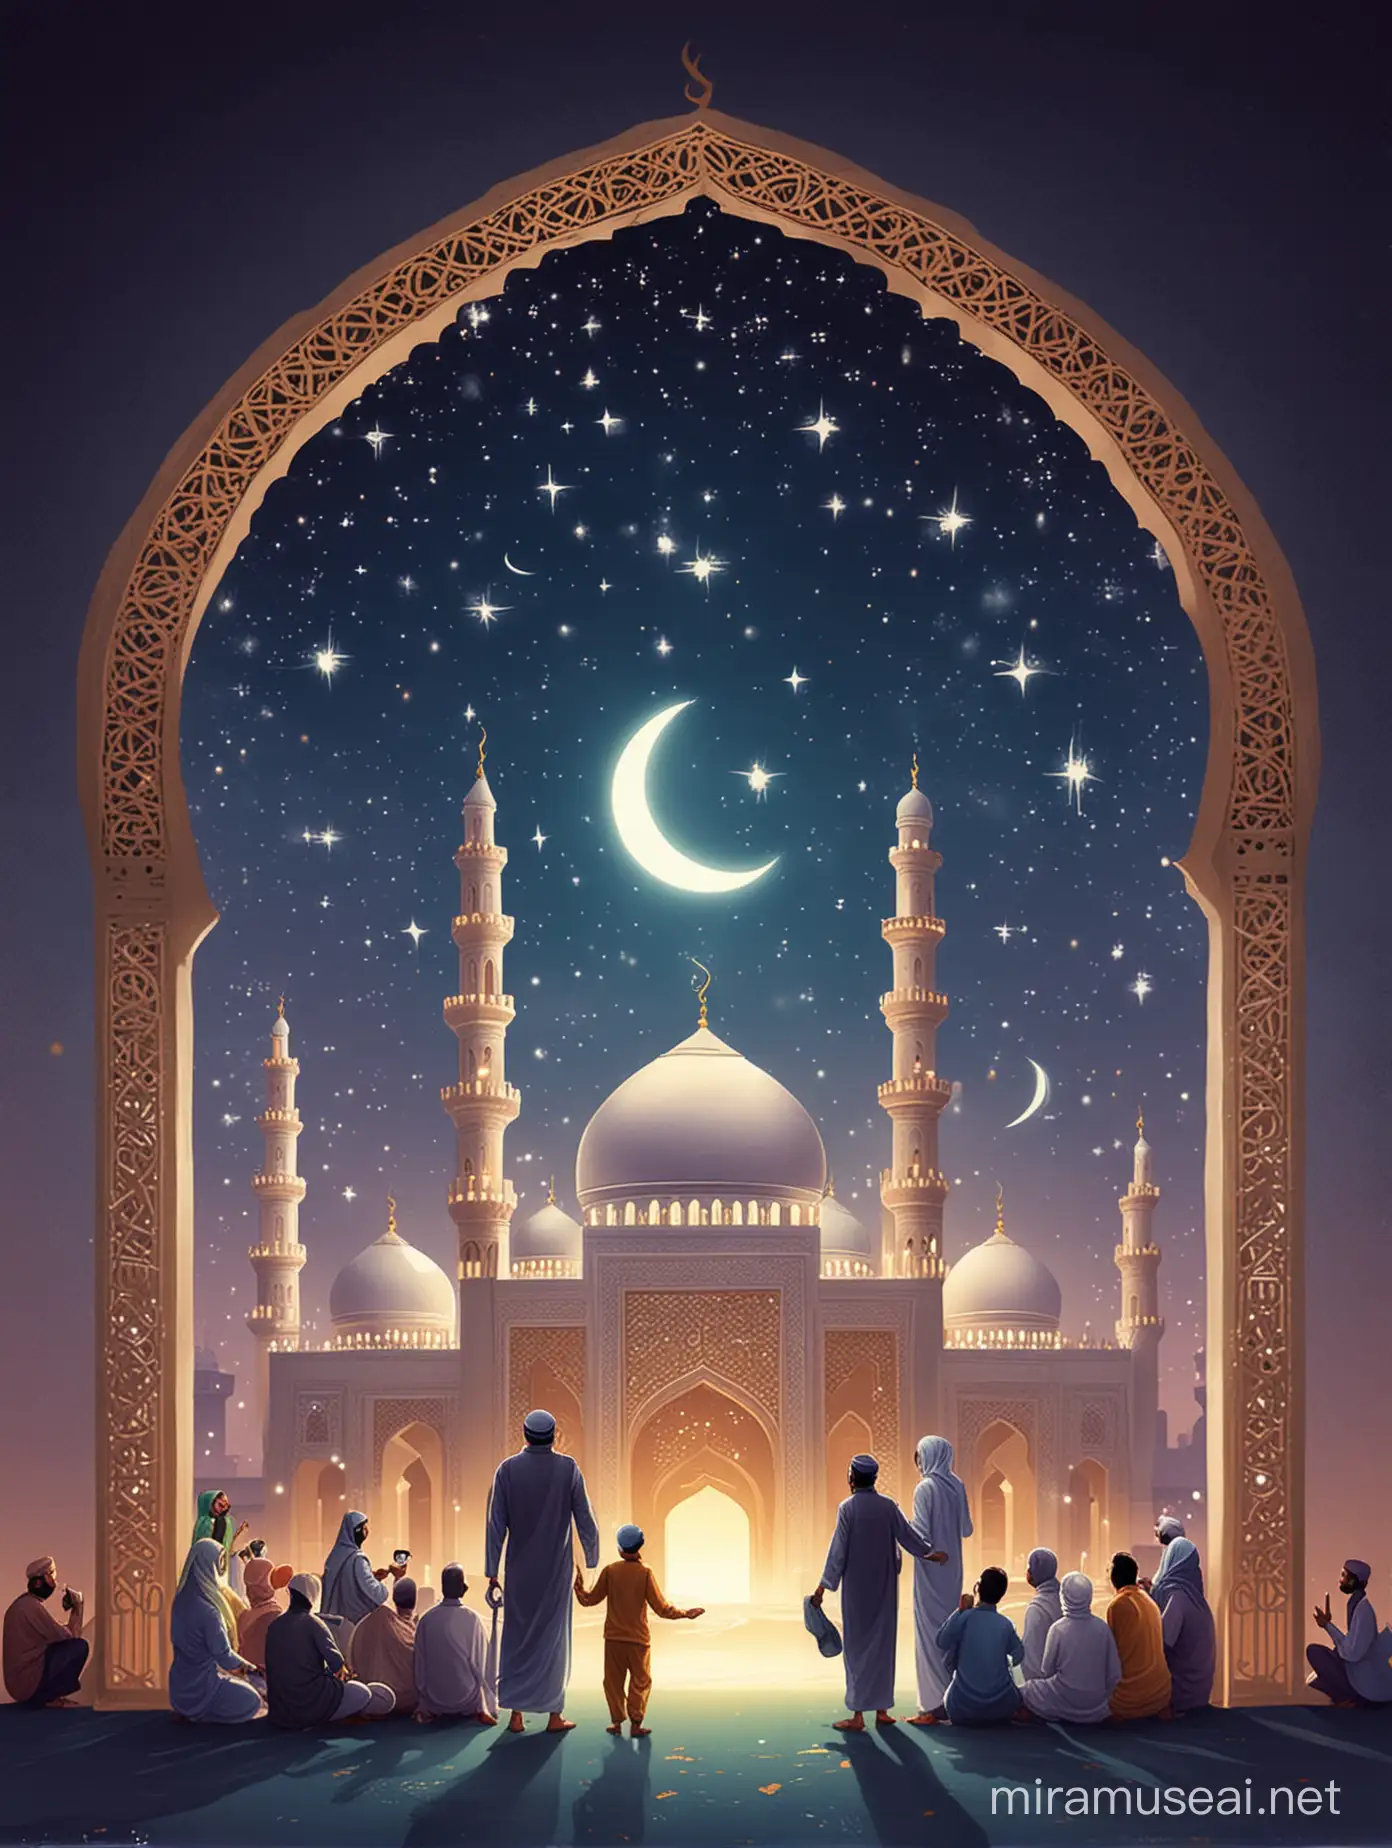 Eid Mubarak Celebration with Colorful Festivities and Joyous Gatherings